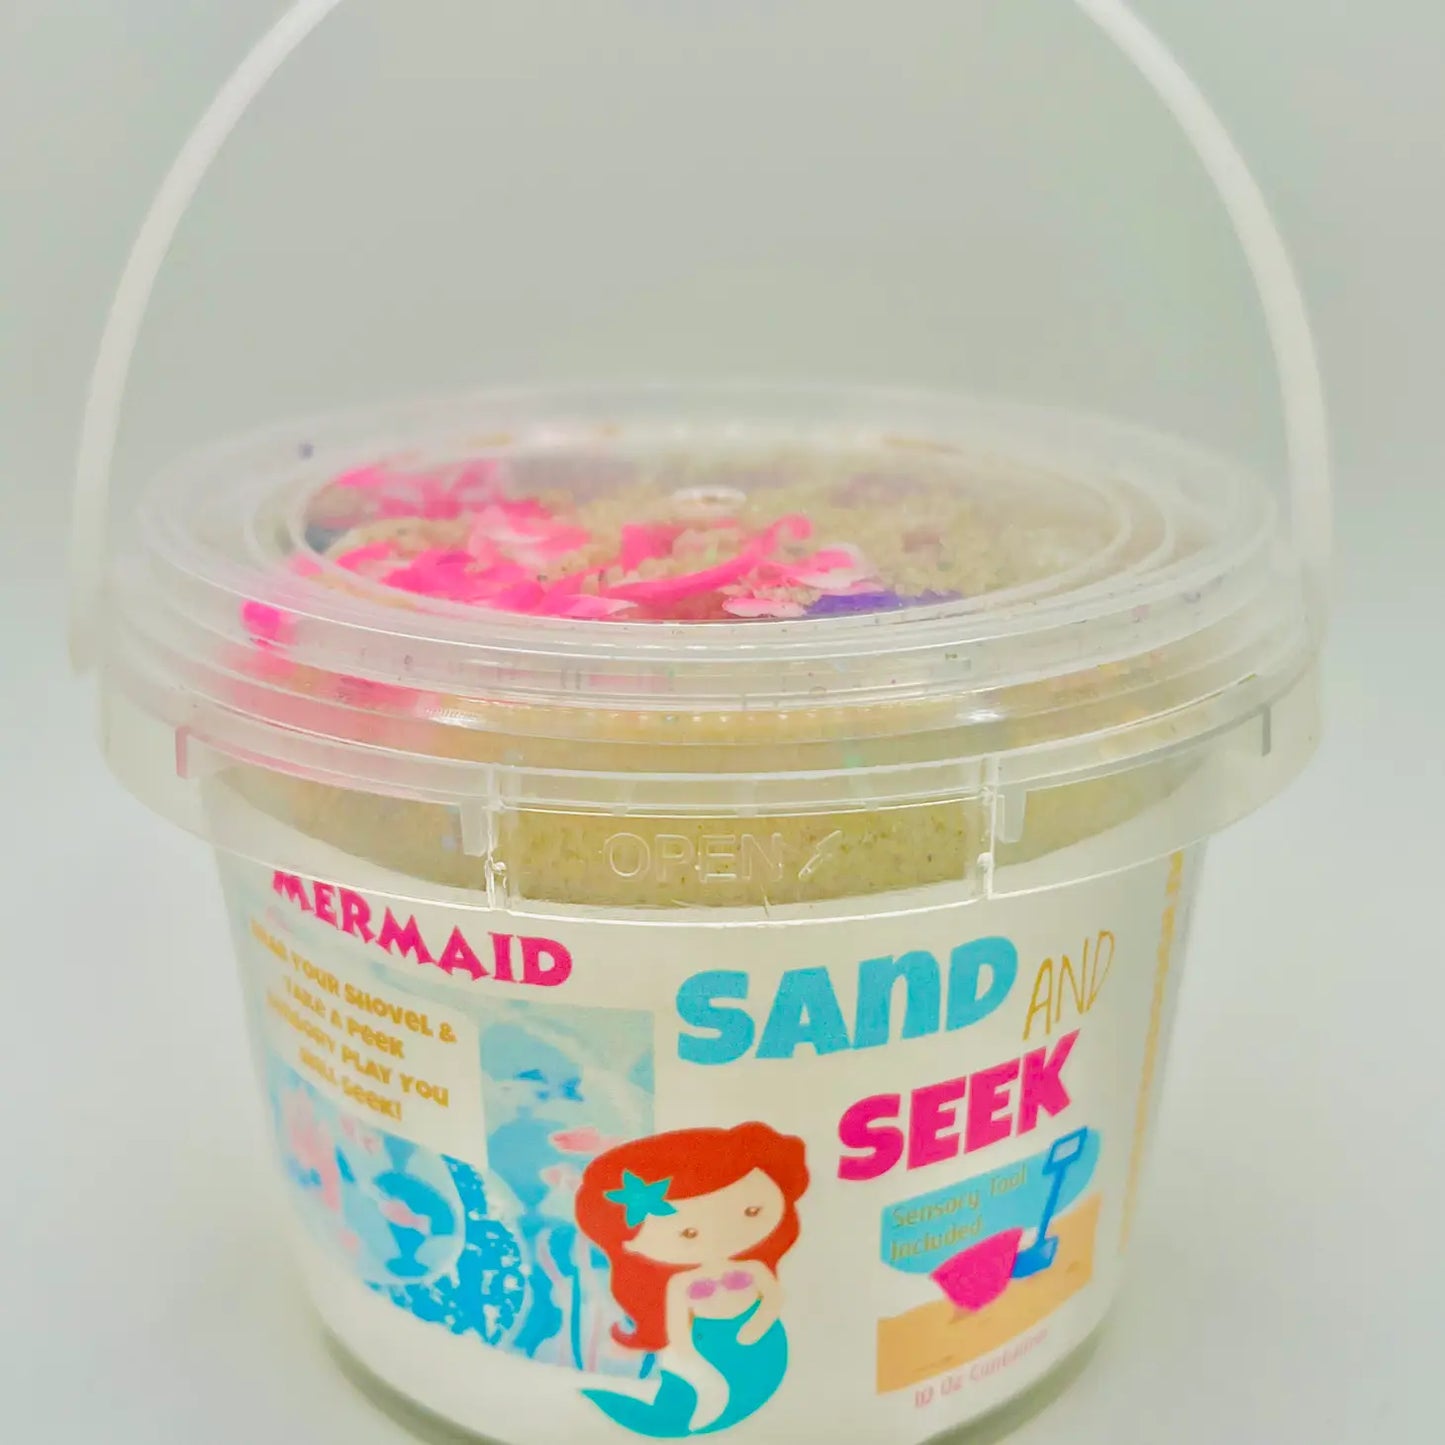 Mermaid Sand & Seek Toy